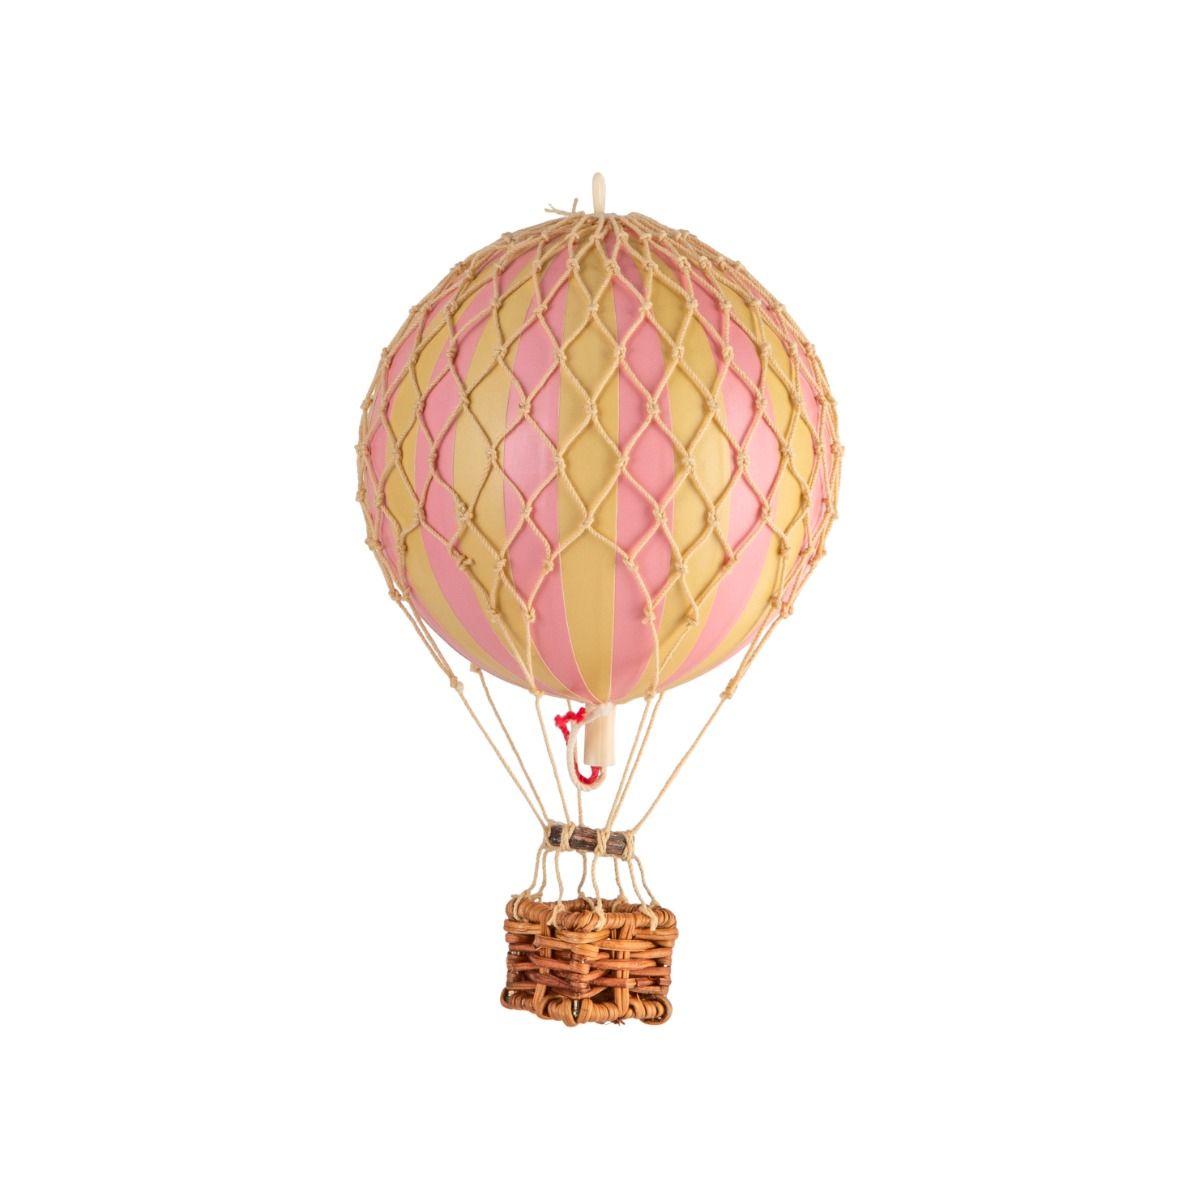 Dekoracja sufitowa / Balon dekoracyjny Pink by AUTHENTIC MODELS